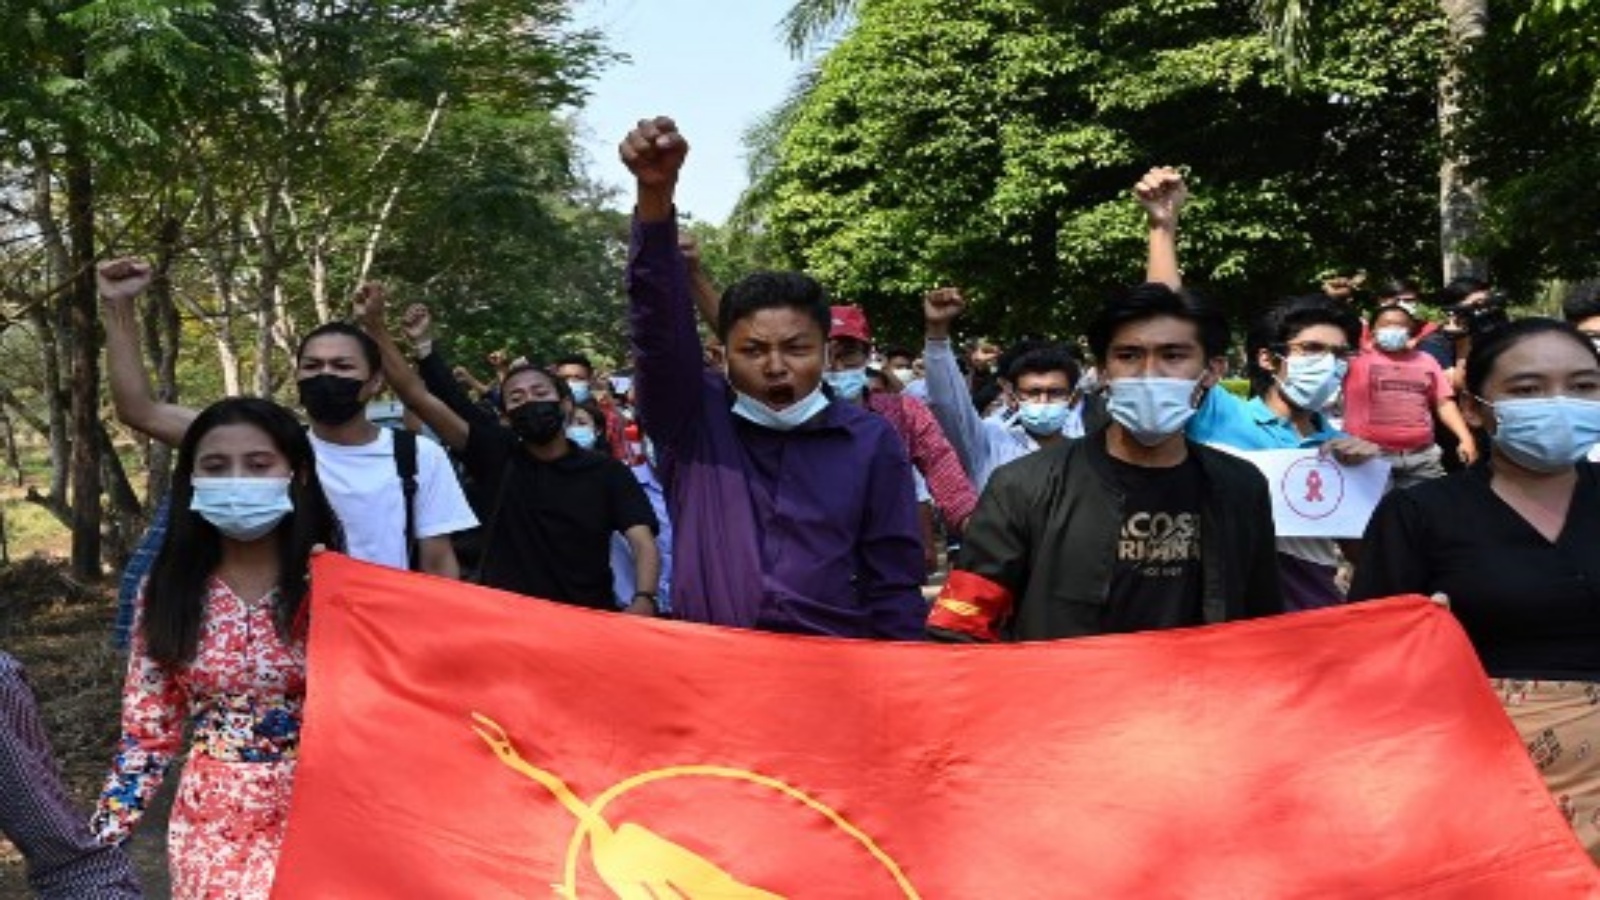 مئات المتظاهرين في رانغون احتجاجاً على الانقلاب في بورما 